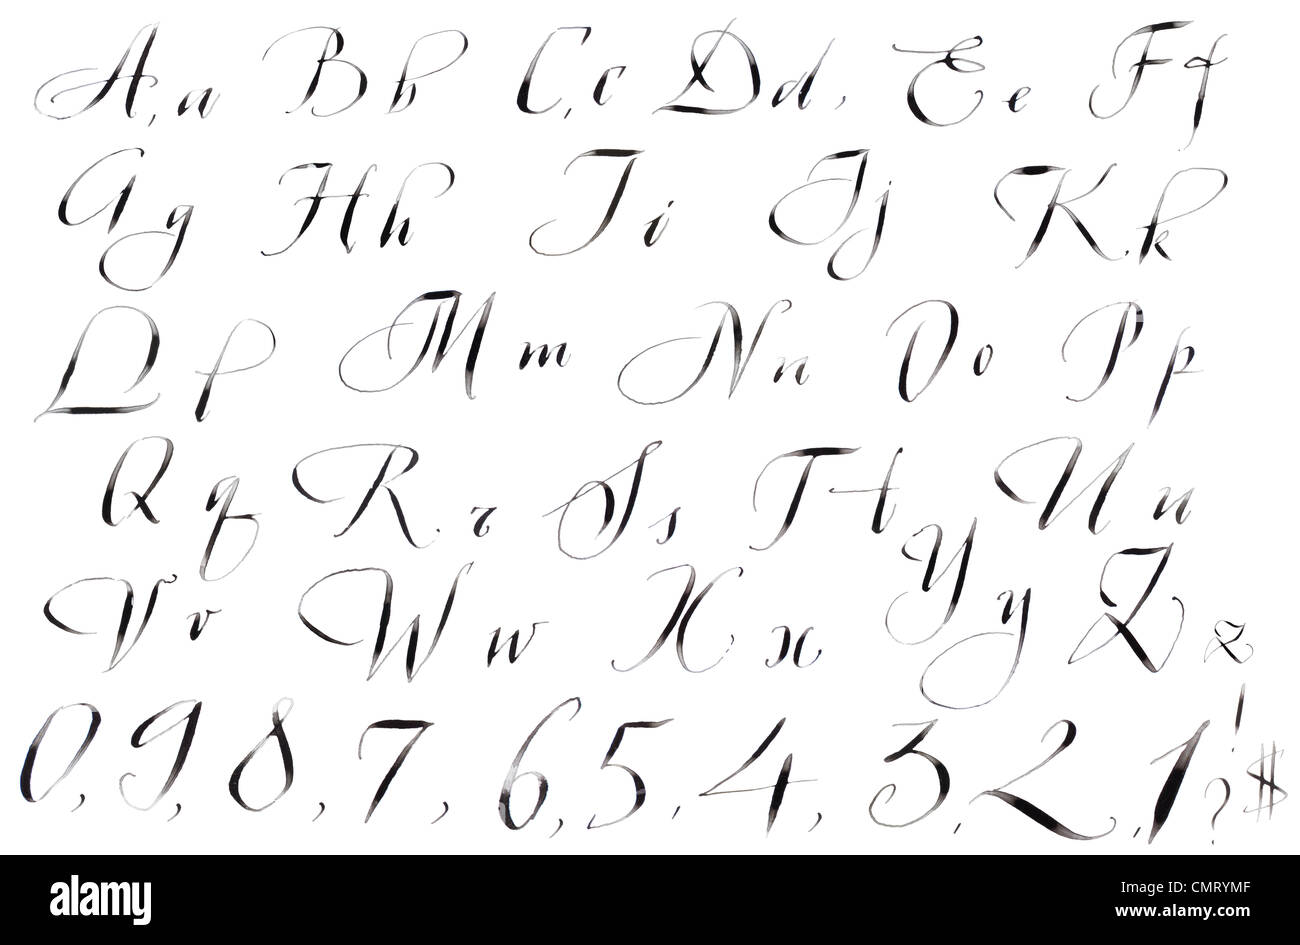 La calligrafia scritto a mano a mano Inghilterra alfabeto in retro isolato di inchiostro Foto Stock